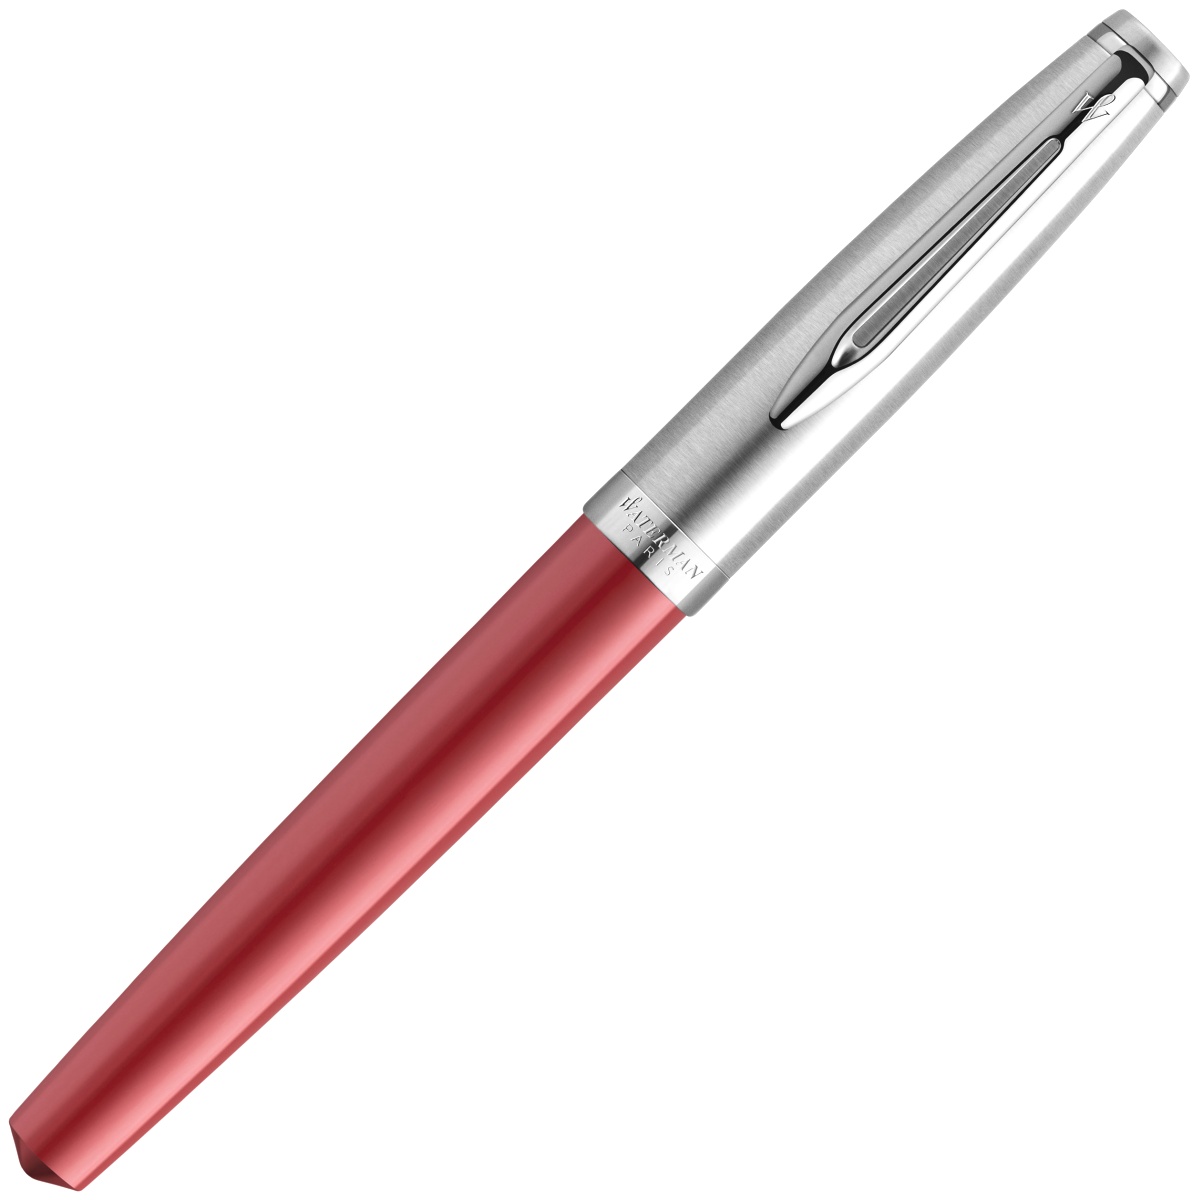  Ручка перьевая Waterman Embleme, Red CT (Перо F), фото 2